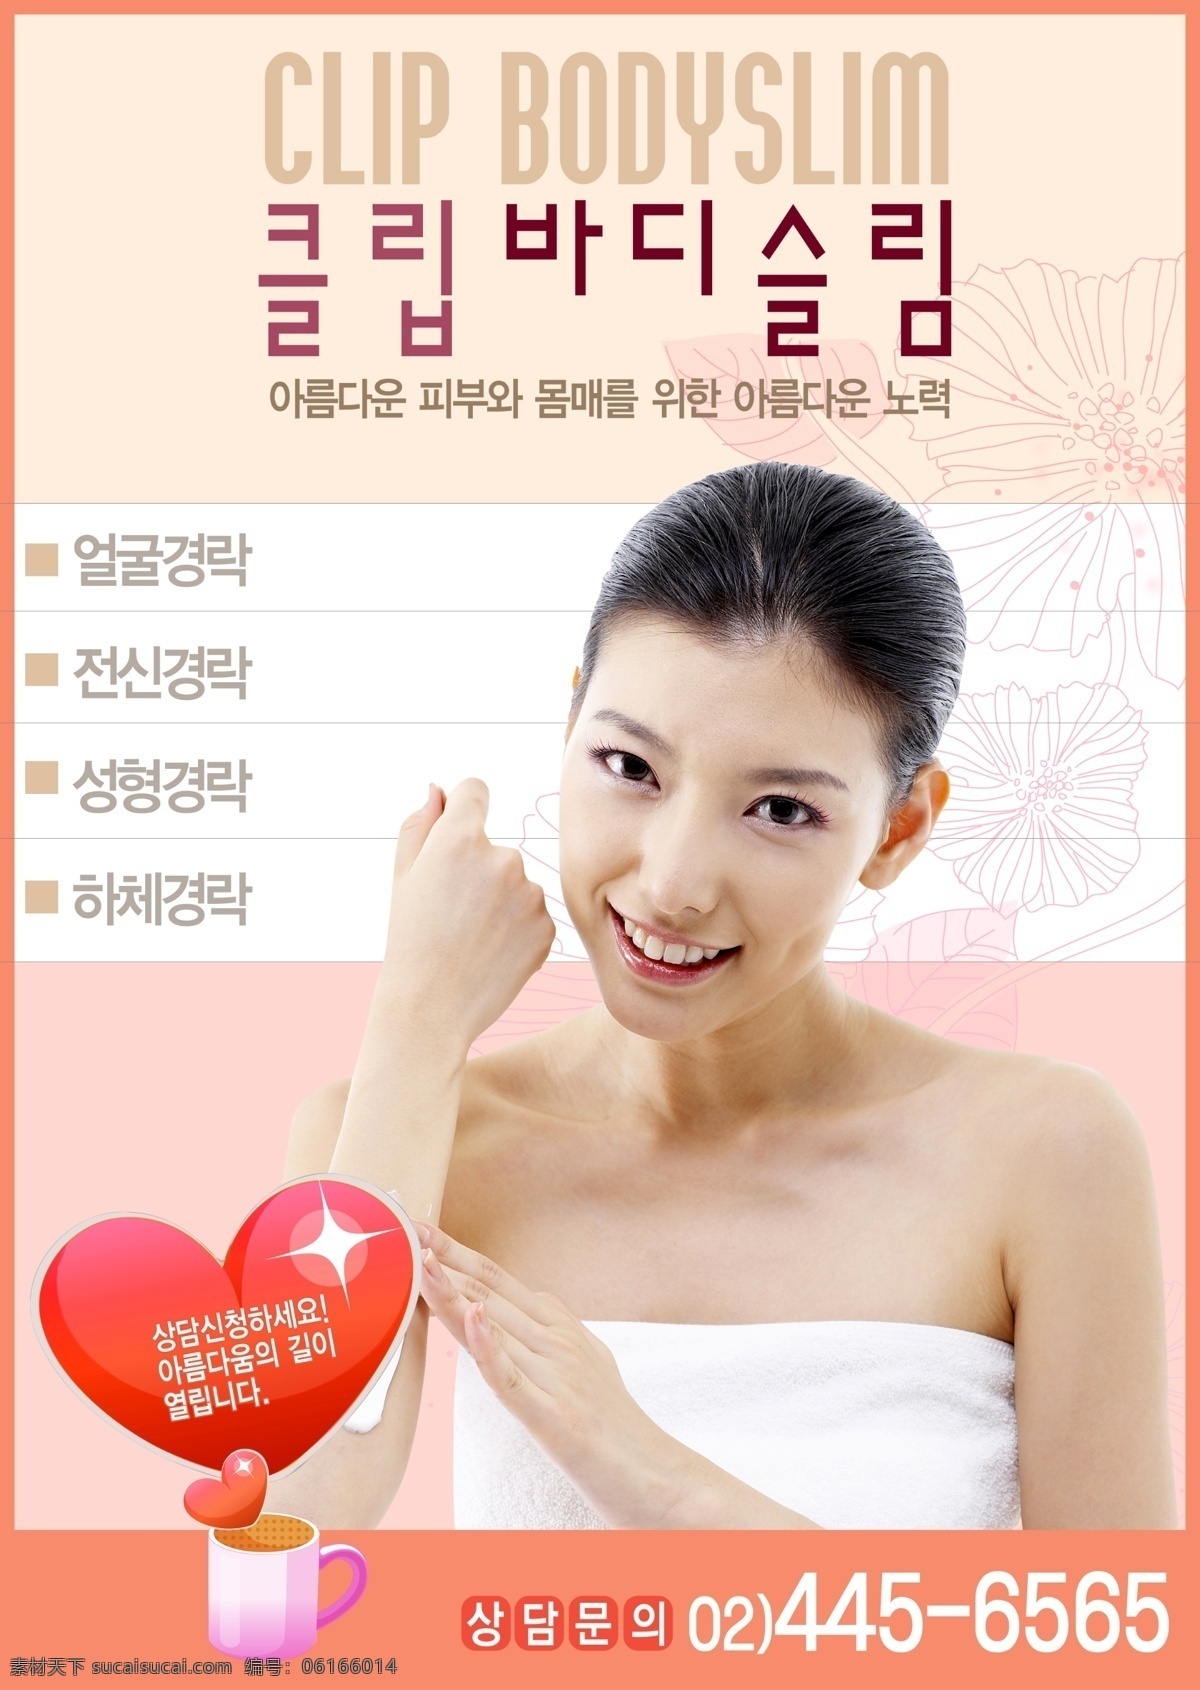 韩国 美容 韩国美容 韩国海报 水 一杯水 女人 美丽女人 性感女人 广告 模板 海报 展板 广告模板 广告展板设计 广告设计模板 psd素材 白色